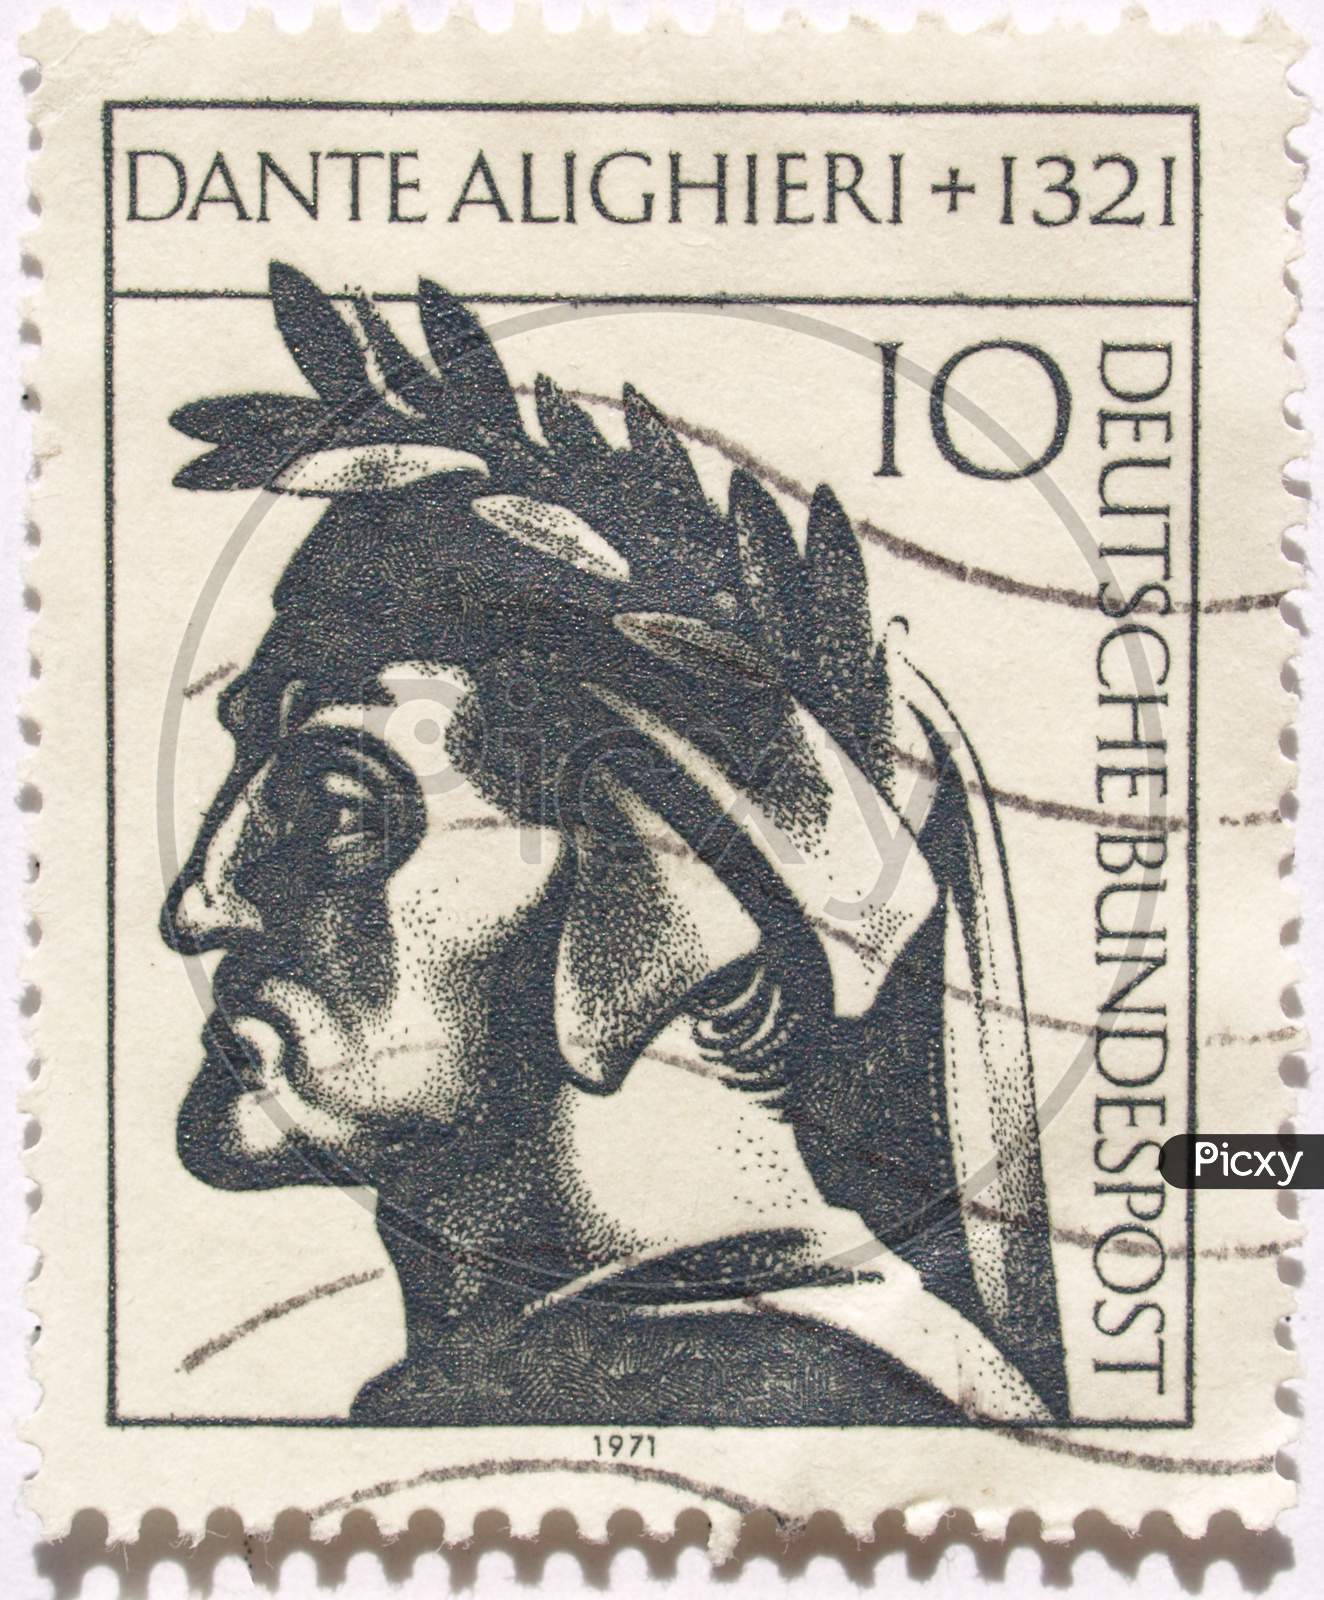 Dante Alighieri Stamp Picture